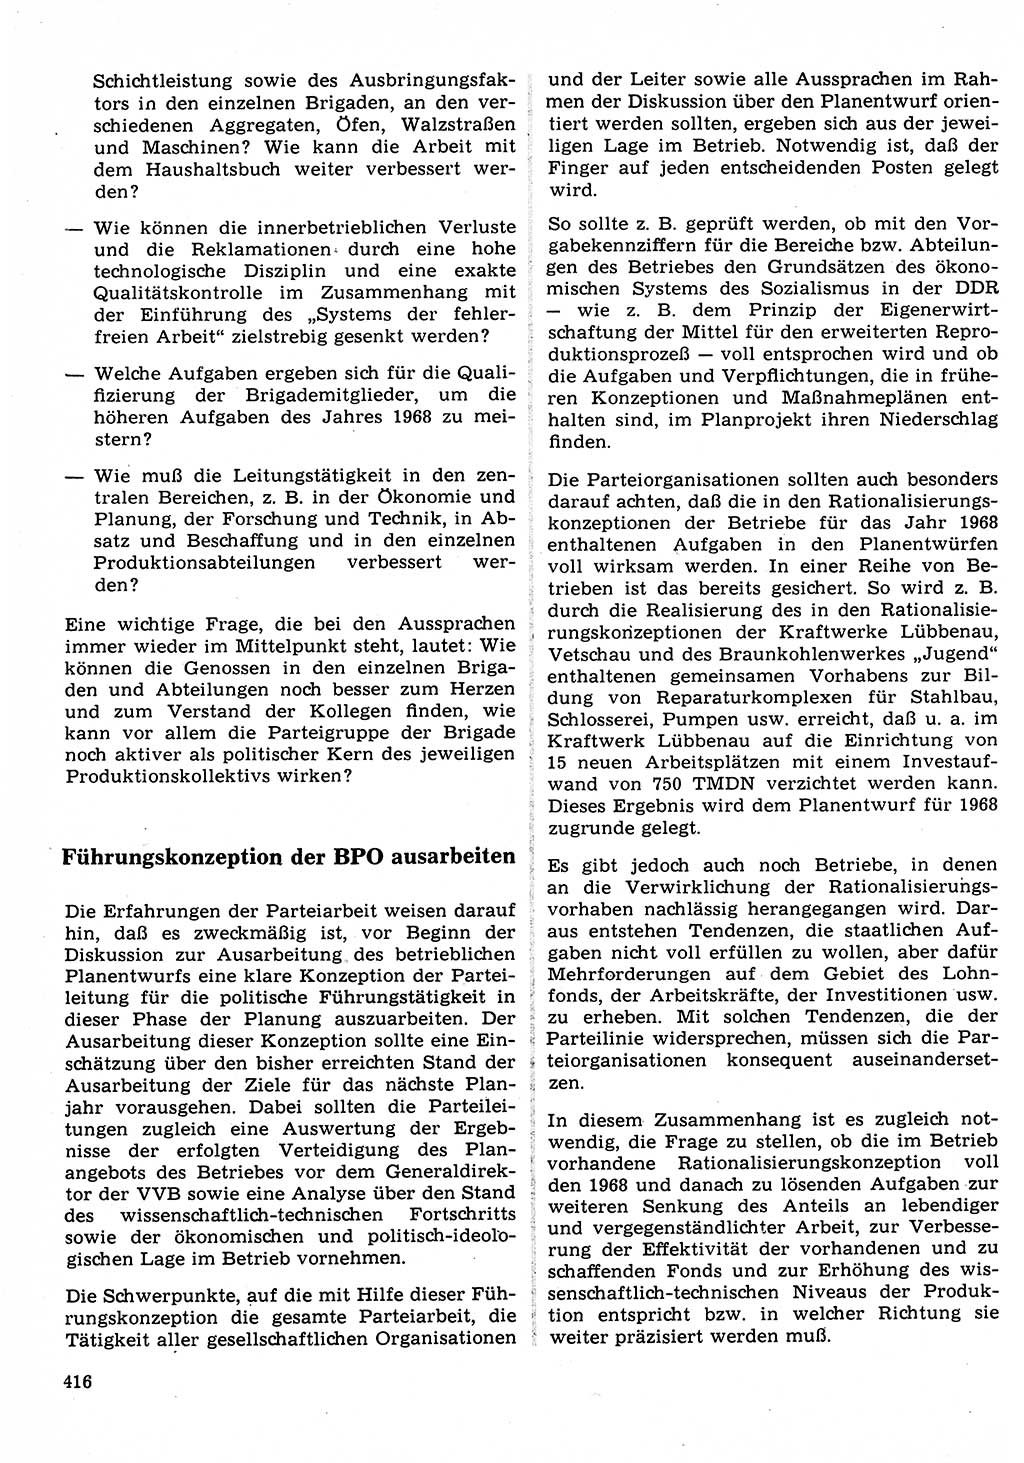 Neuer Weg (NW), Organ des Zentralkomitees (ZK) der SED (Sozialistische Einheitspartei Deutschlands) für Fragen des Parteilebens, 22. Jahrgang [Deutsche Demokratische Republik (DDR)] 1967, Seite 416 (NW ZK SED DDR 1967, S. 416)